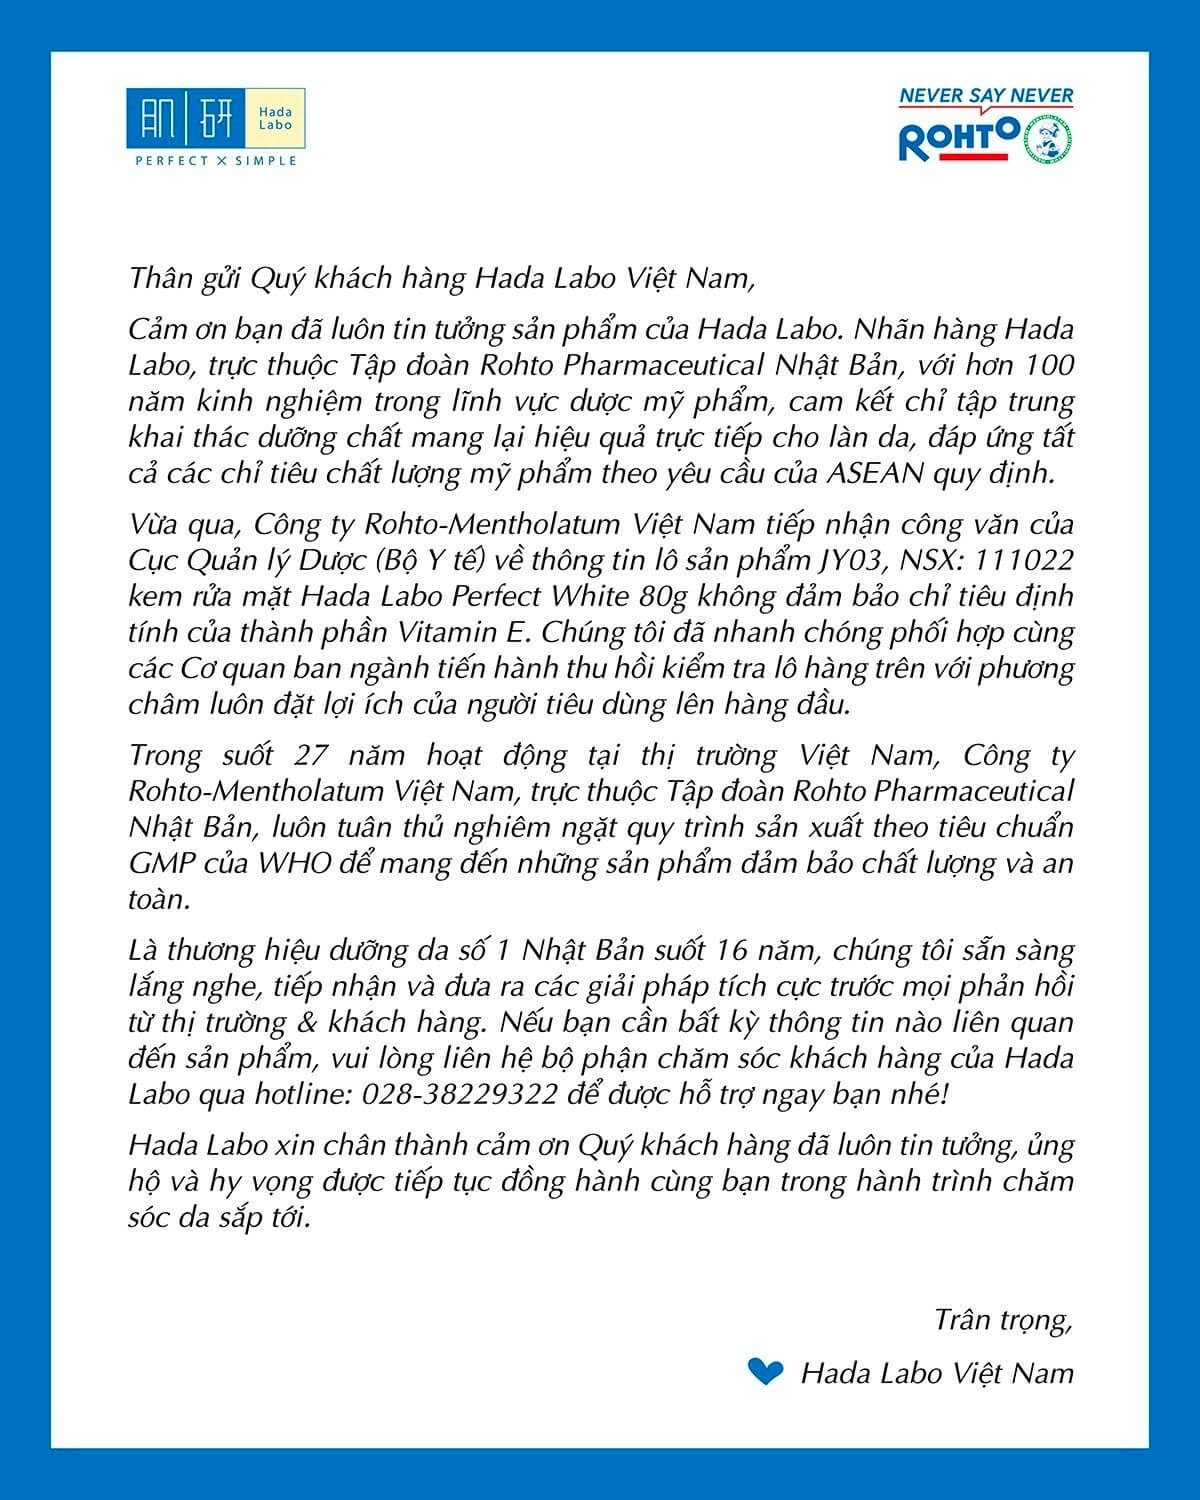 Thông báo từ nhãn hàng Hada Labo về sản phẩm kem rửa mặt tại Việt Nam